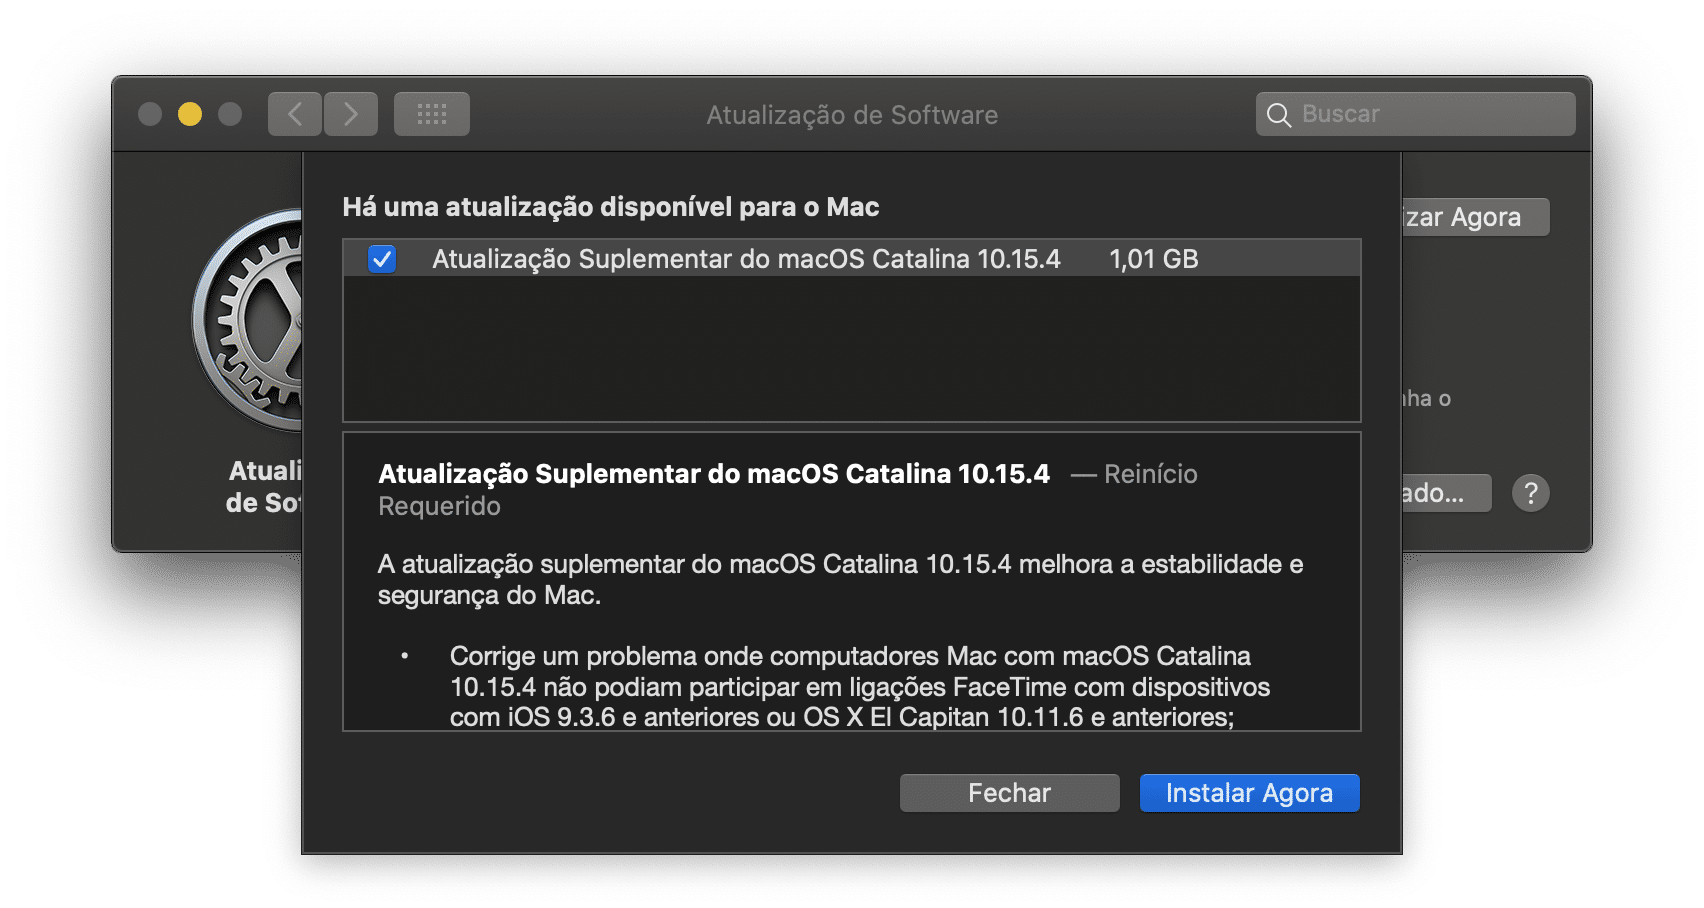 Atualização Suplementar do macOS Catalina 10.15.4